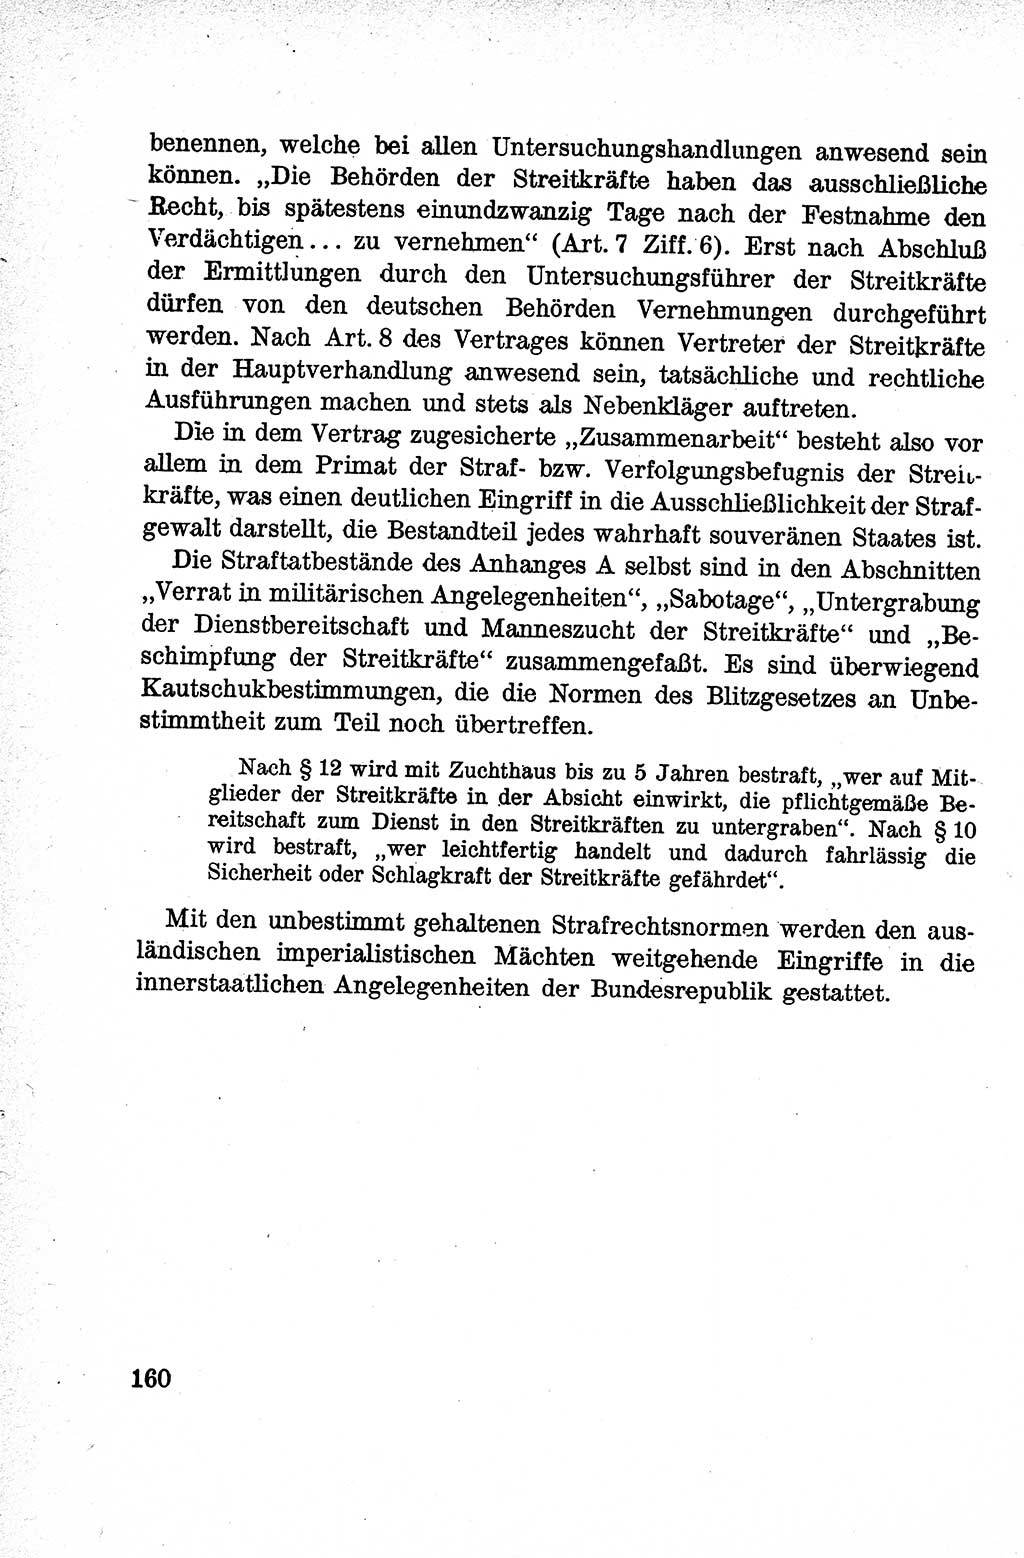 Lehrbuch des Strafrechts der Deutschen Demokratischen Republik (DDR), Allgemeiner Teil 1959, Seite 160 (Lb. Strafr. DDR AT 1959, S. 160)